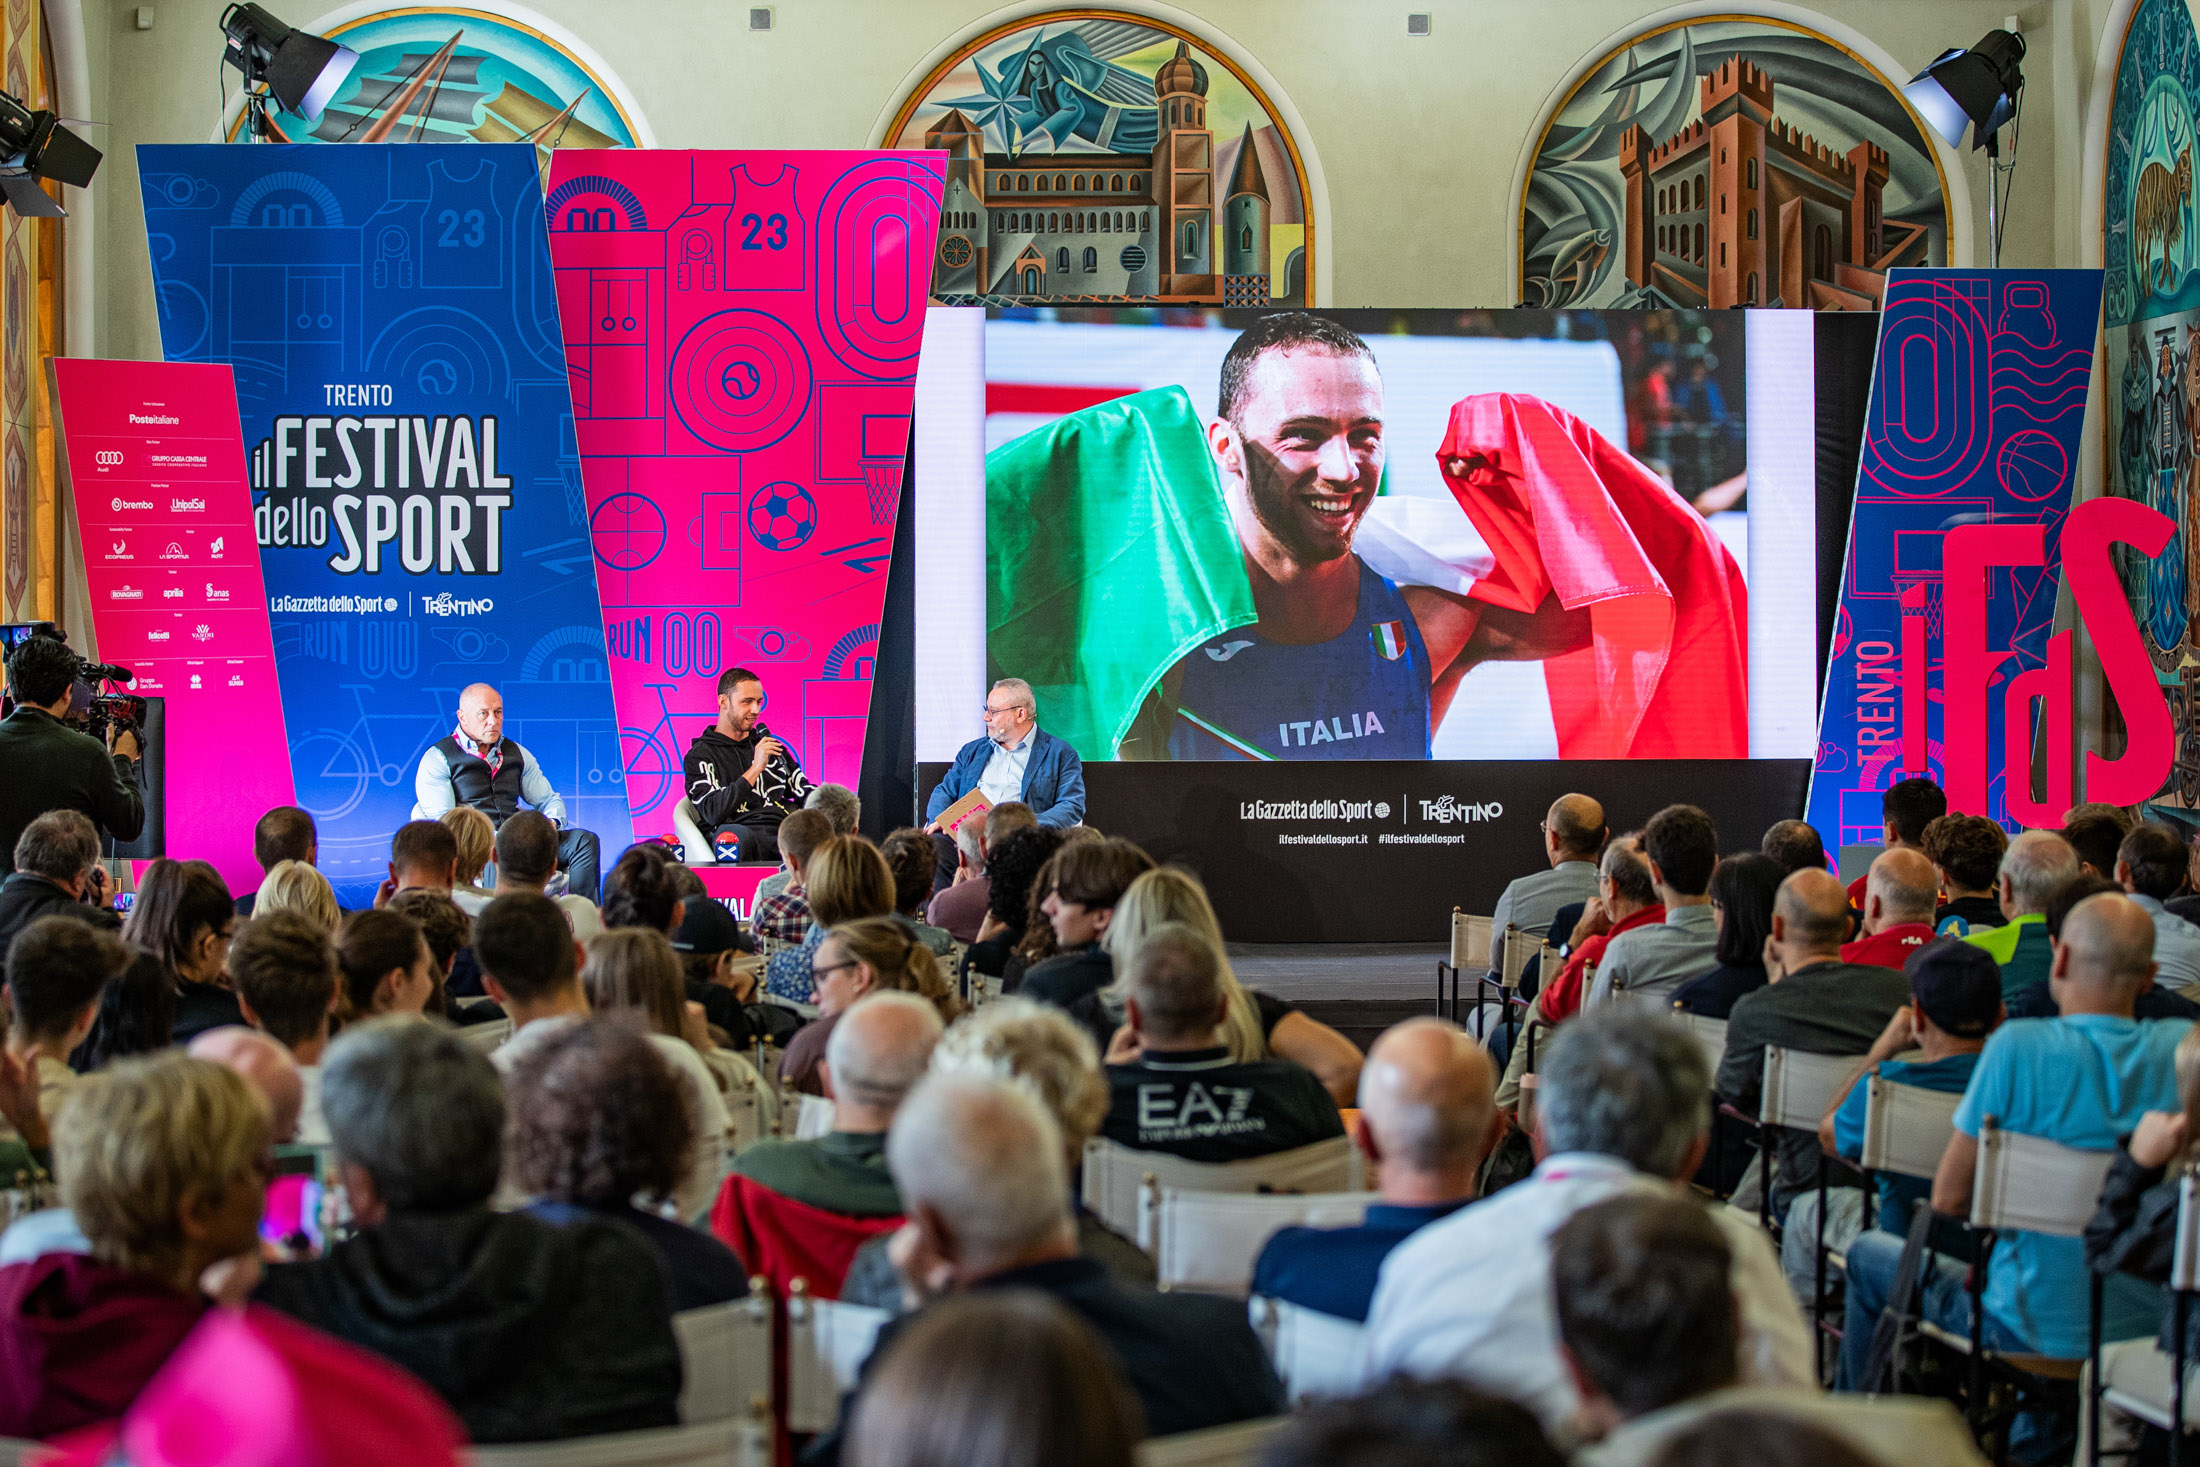 Nella foto: Stefano TILLI, Samuele CECCARELLI, Andrea BUONGIOVANNI, pubblico in sala